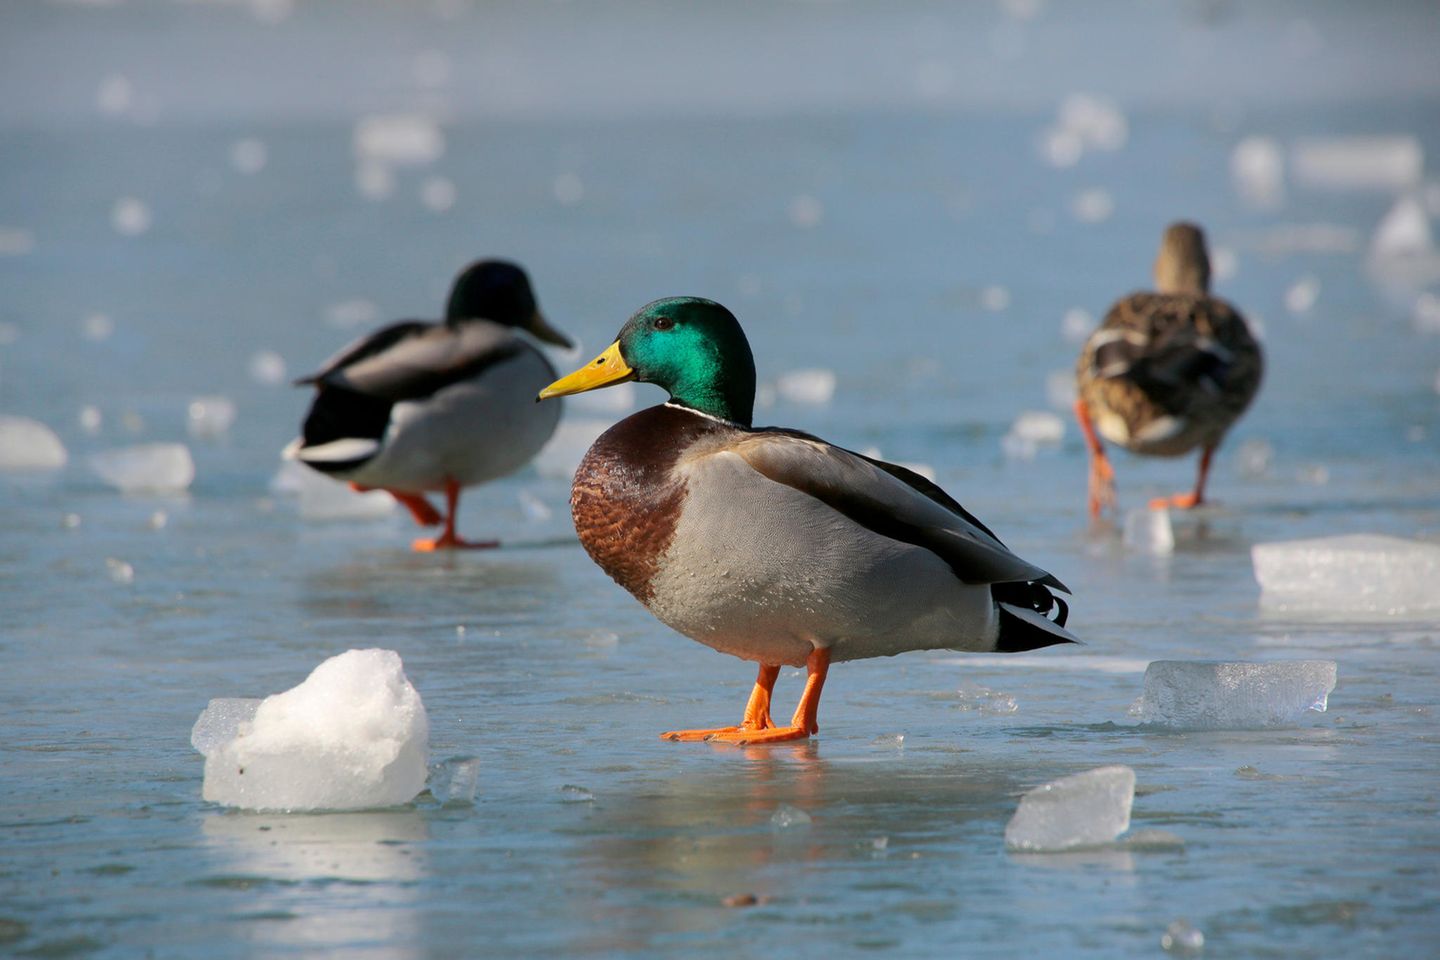 Stockenten auf dem Eis: Warum frieren Enten nicht auf dem Eis fest?